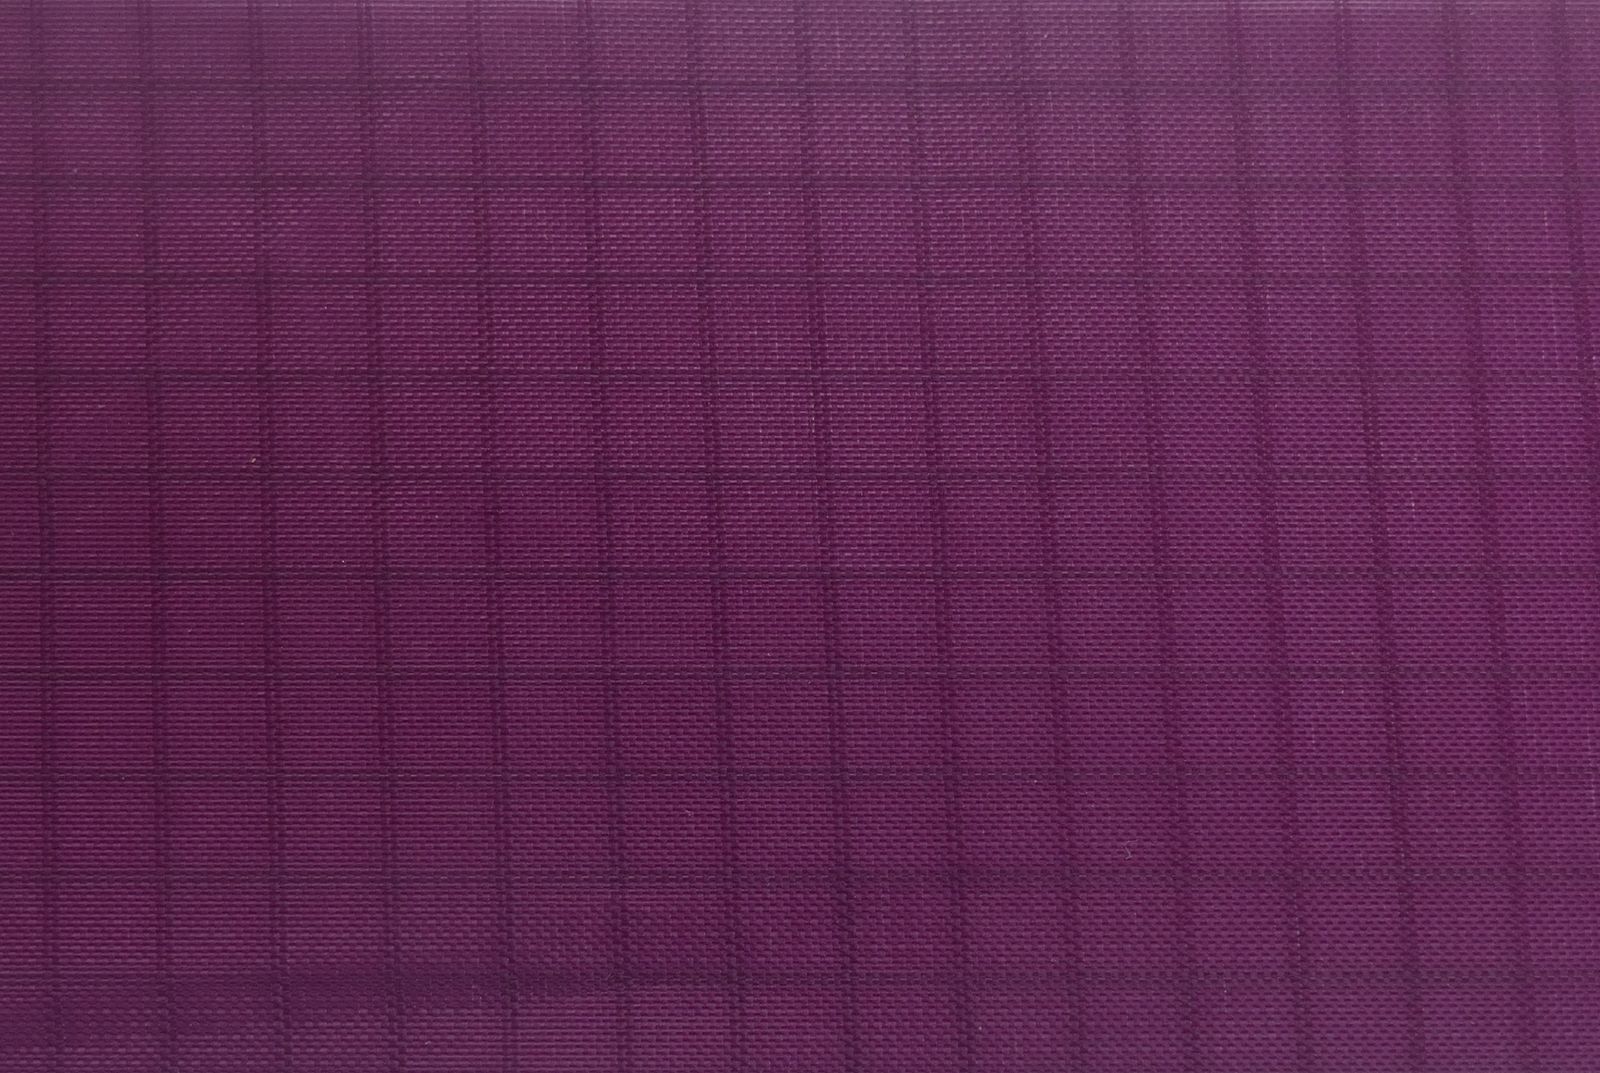 10 Meter - Elltex Spinnakertuch-Nylon reißfestes Gewebetuch mit Ripstop 150 cm breit dark purple PU-beschichtet für Drachen- und Modellbau